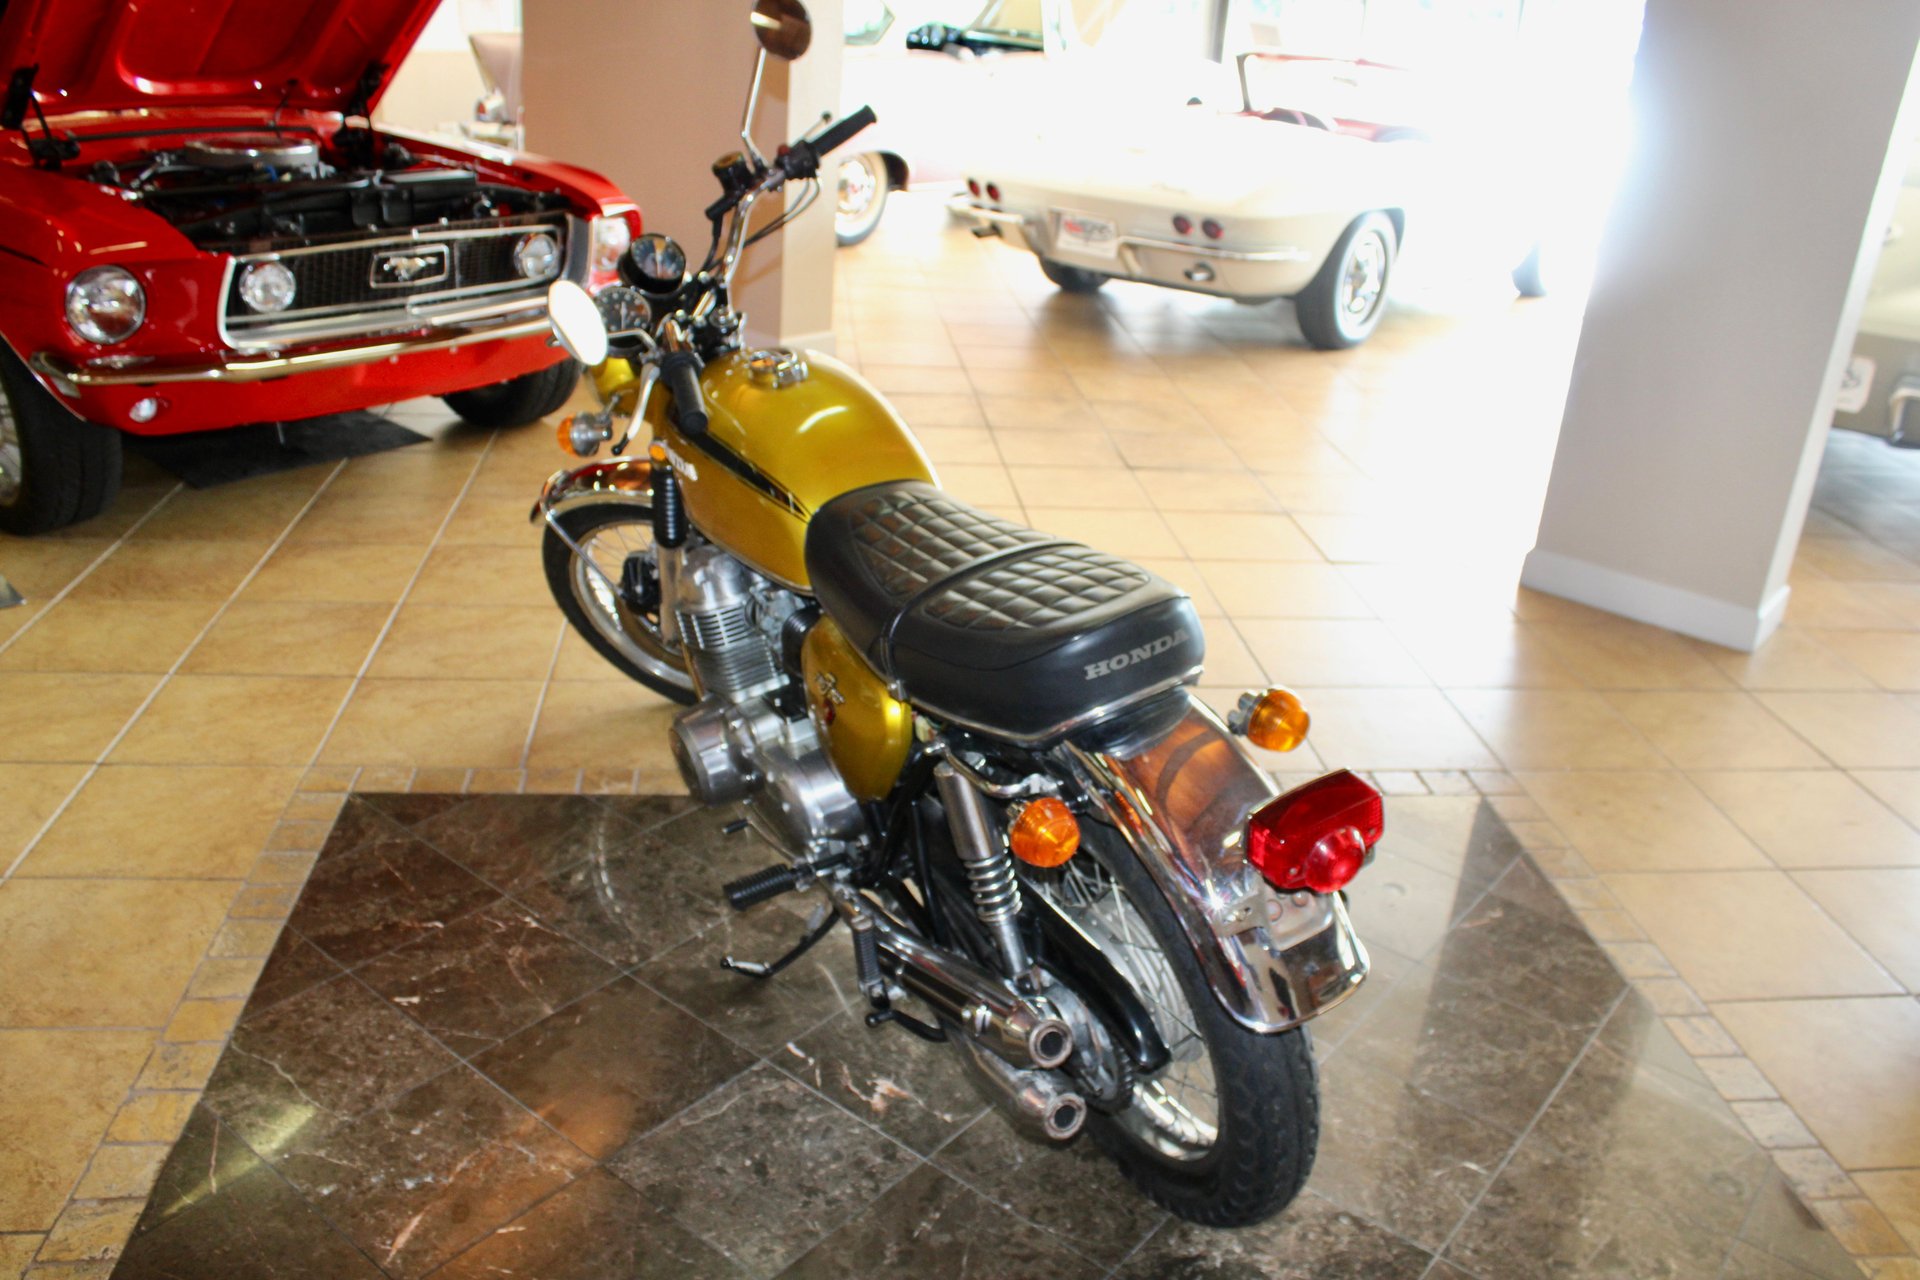 For Sale 1971 Honda CB750 four